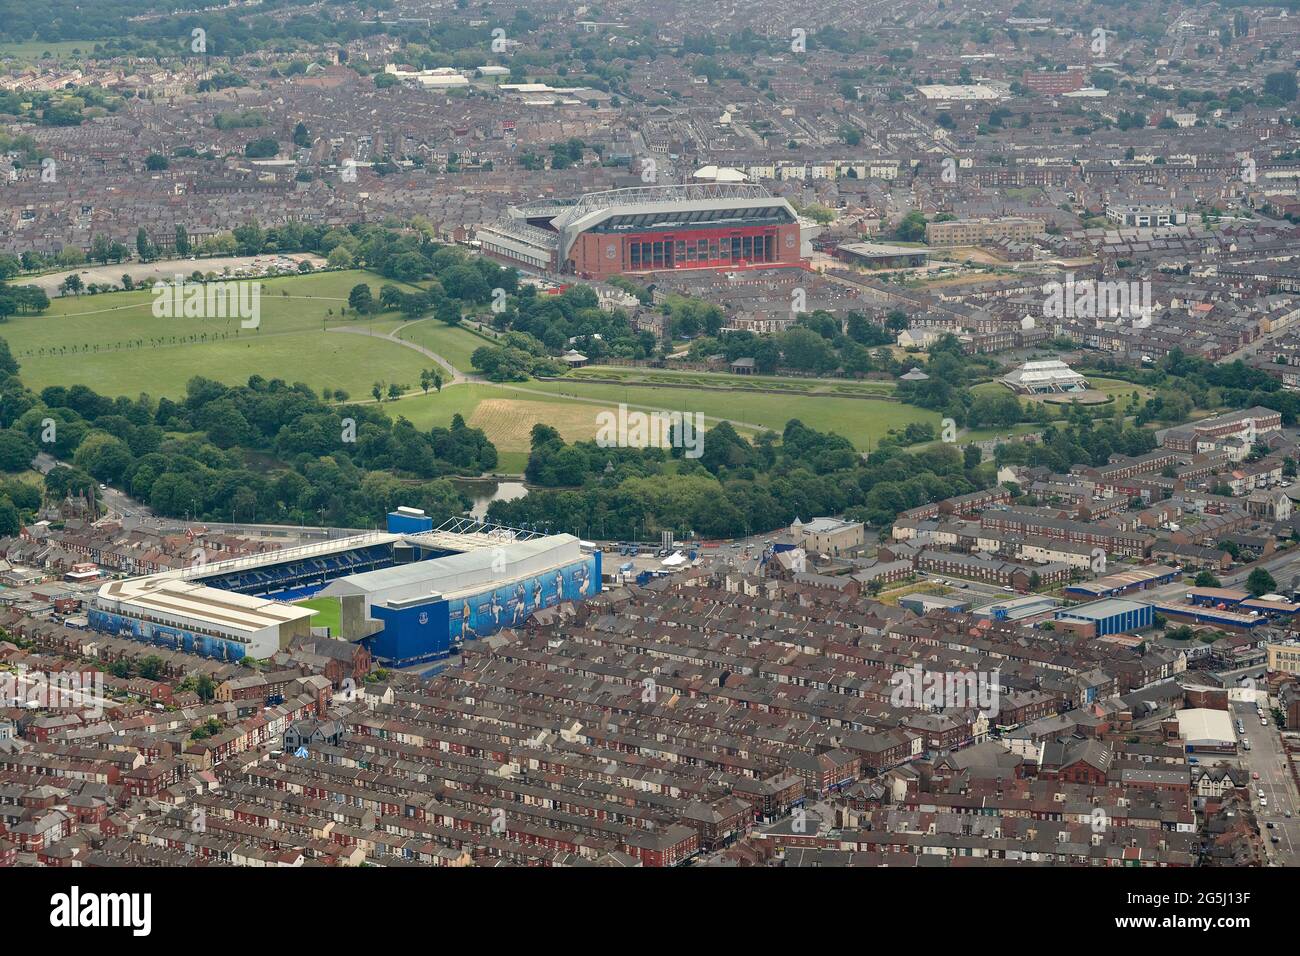 Una vista aerea dei due campi da calcio di Liverpool, l'Everton e il Liverpool FC, con Stanley Park in mezzo, Merseyside, Inghilterra nordoccidentale, Regno Unito Foto Stock